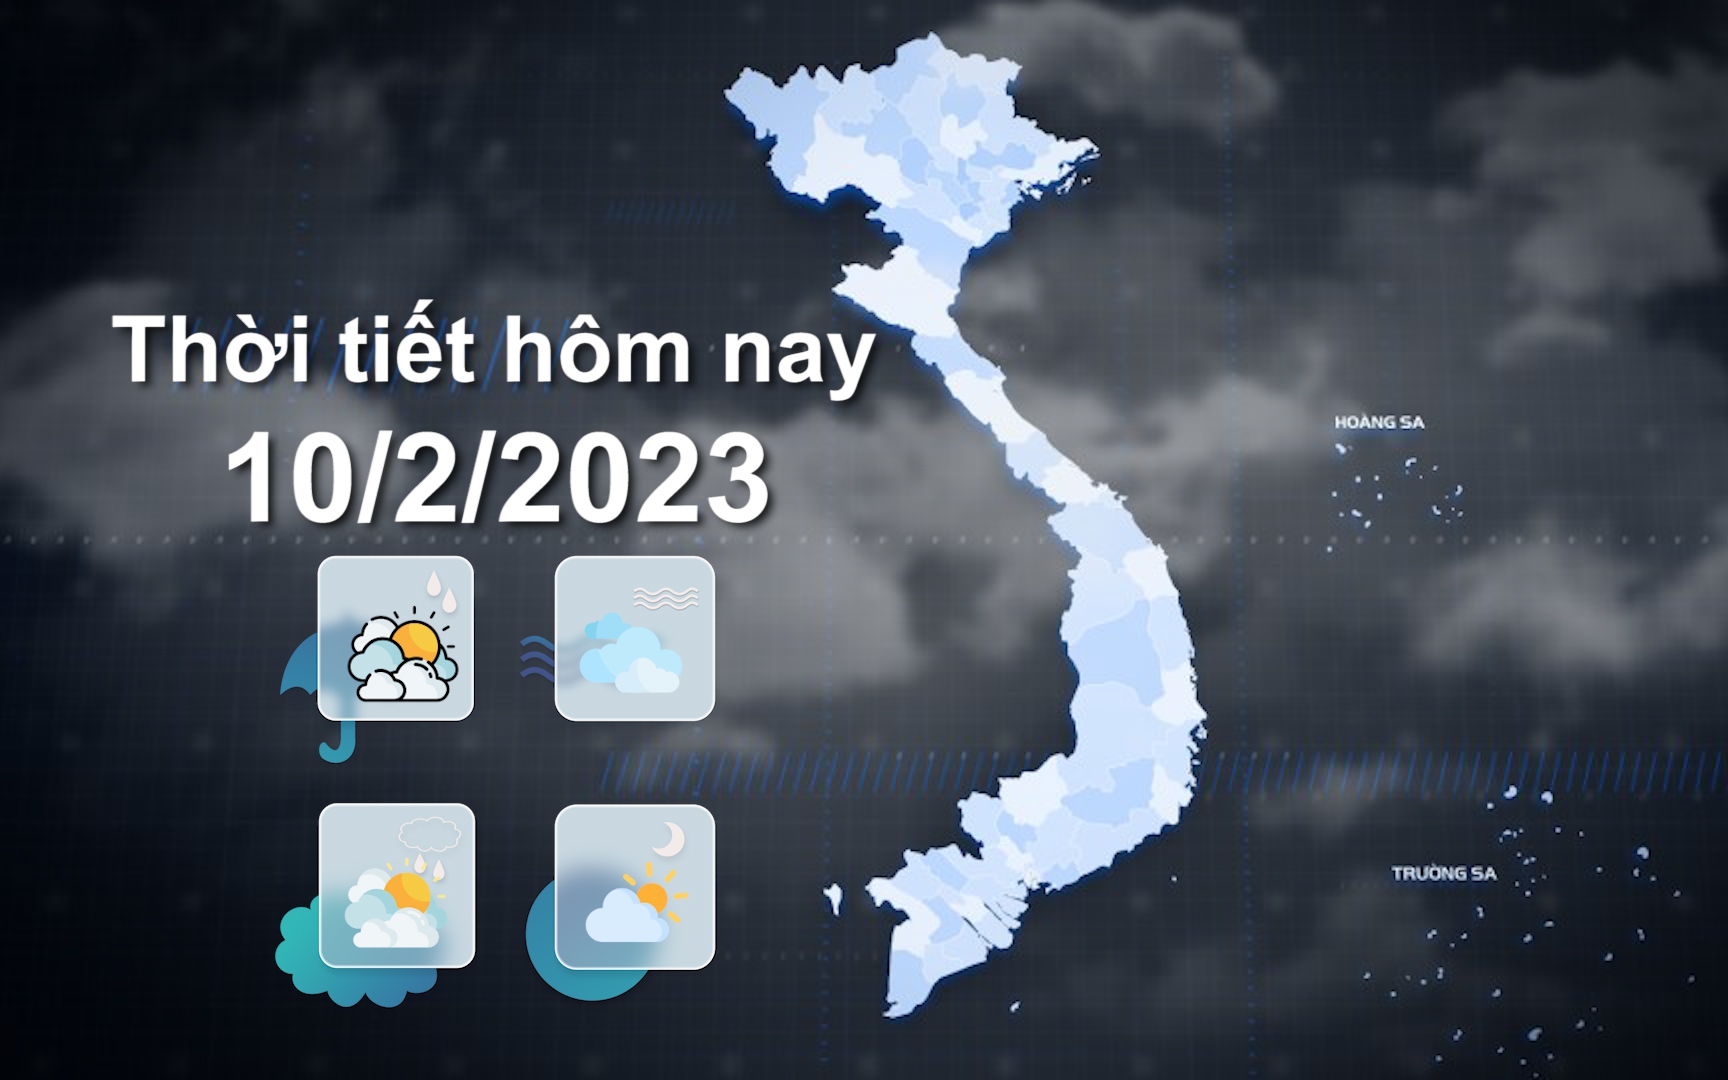 Thời tiết hôm nay 10/2/2023: Hà Nội sáng có mưa nhỏ, mưa phùn, sương mù